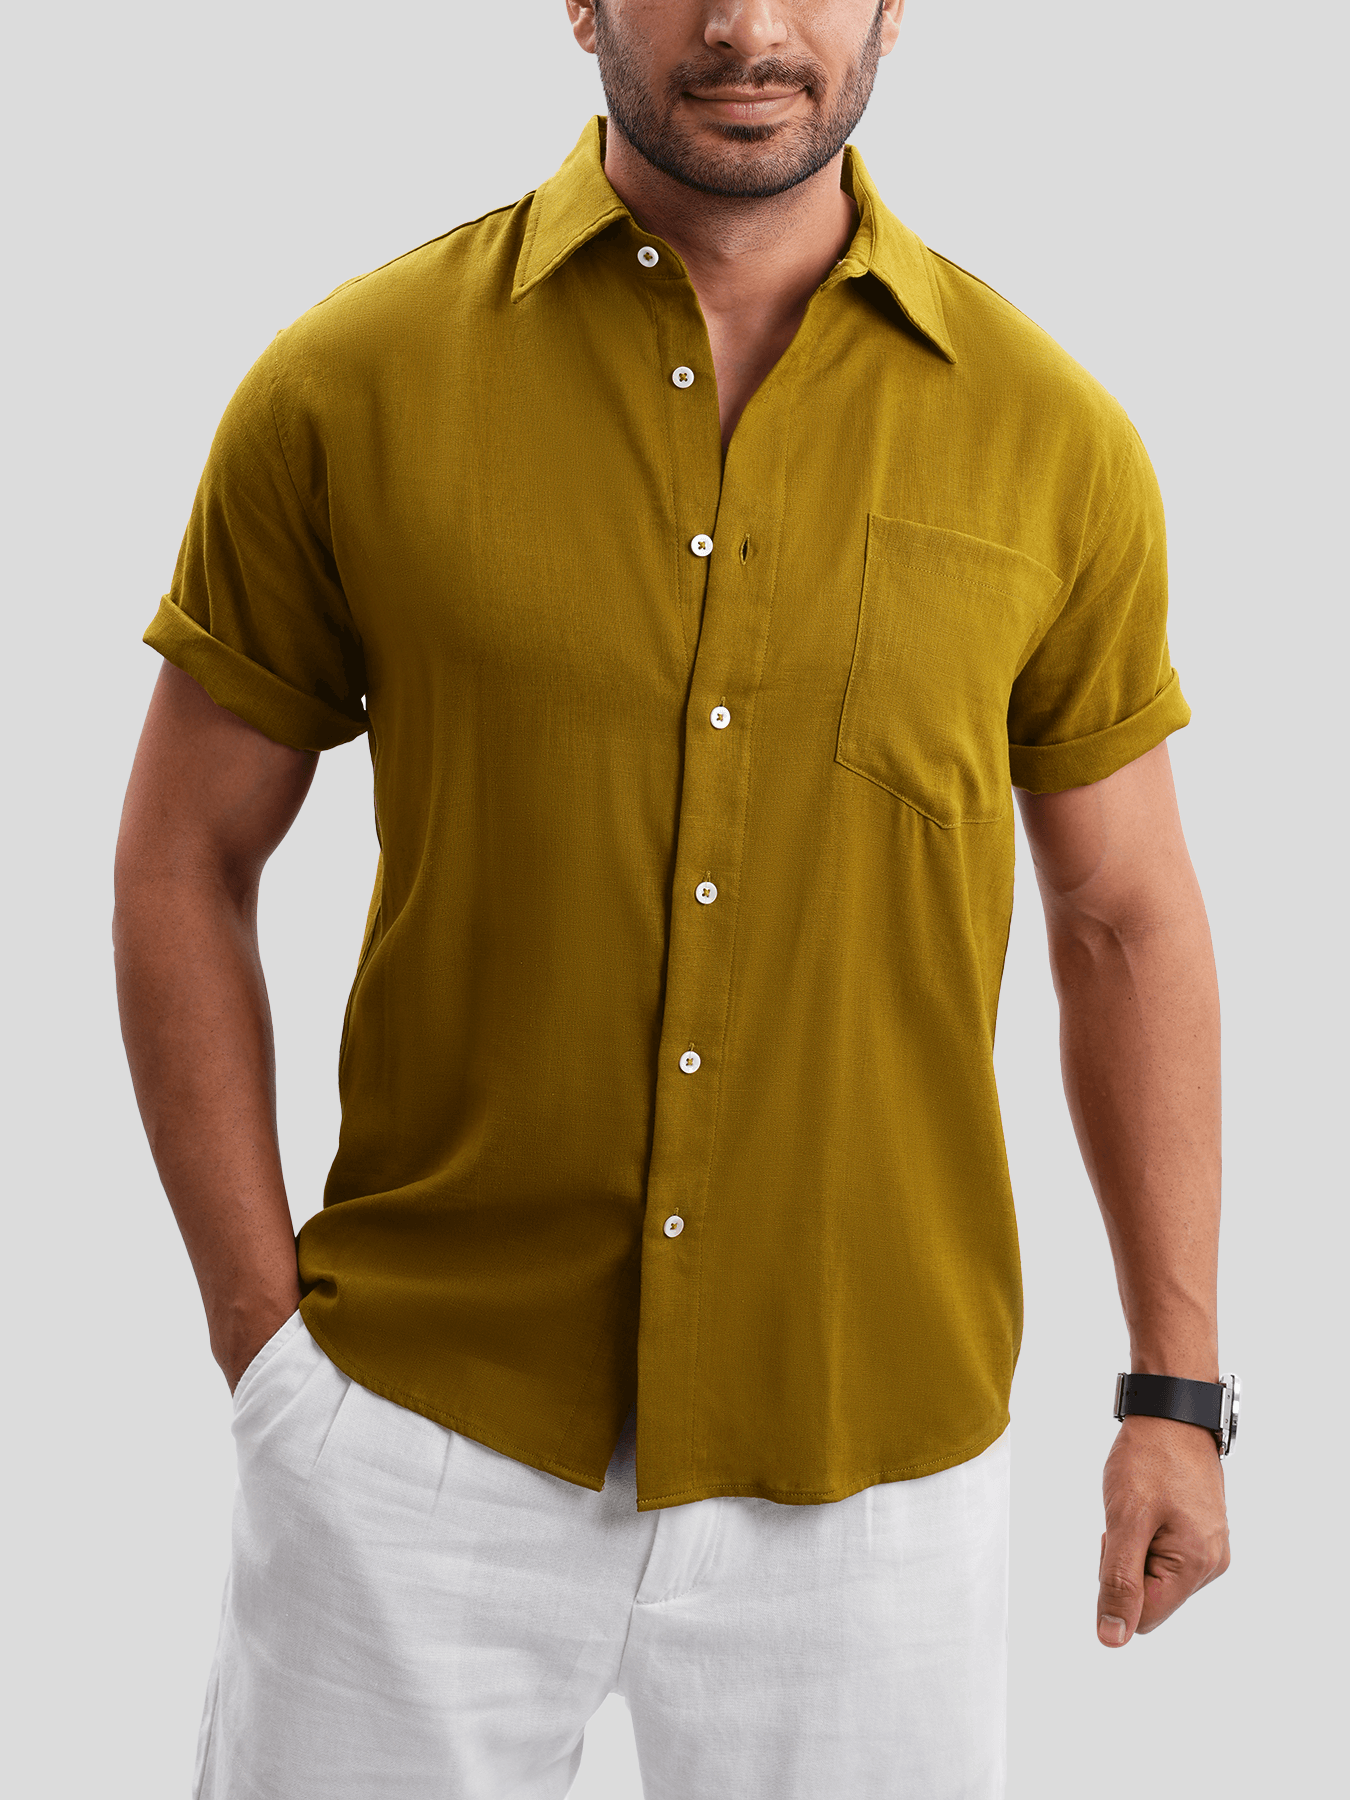 DreamWear Italian Linen Short Sleeve Shirt